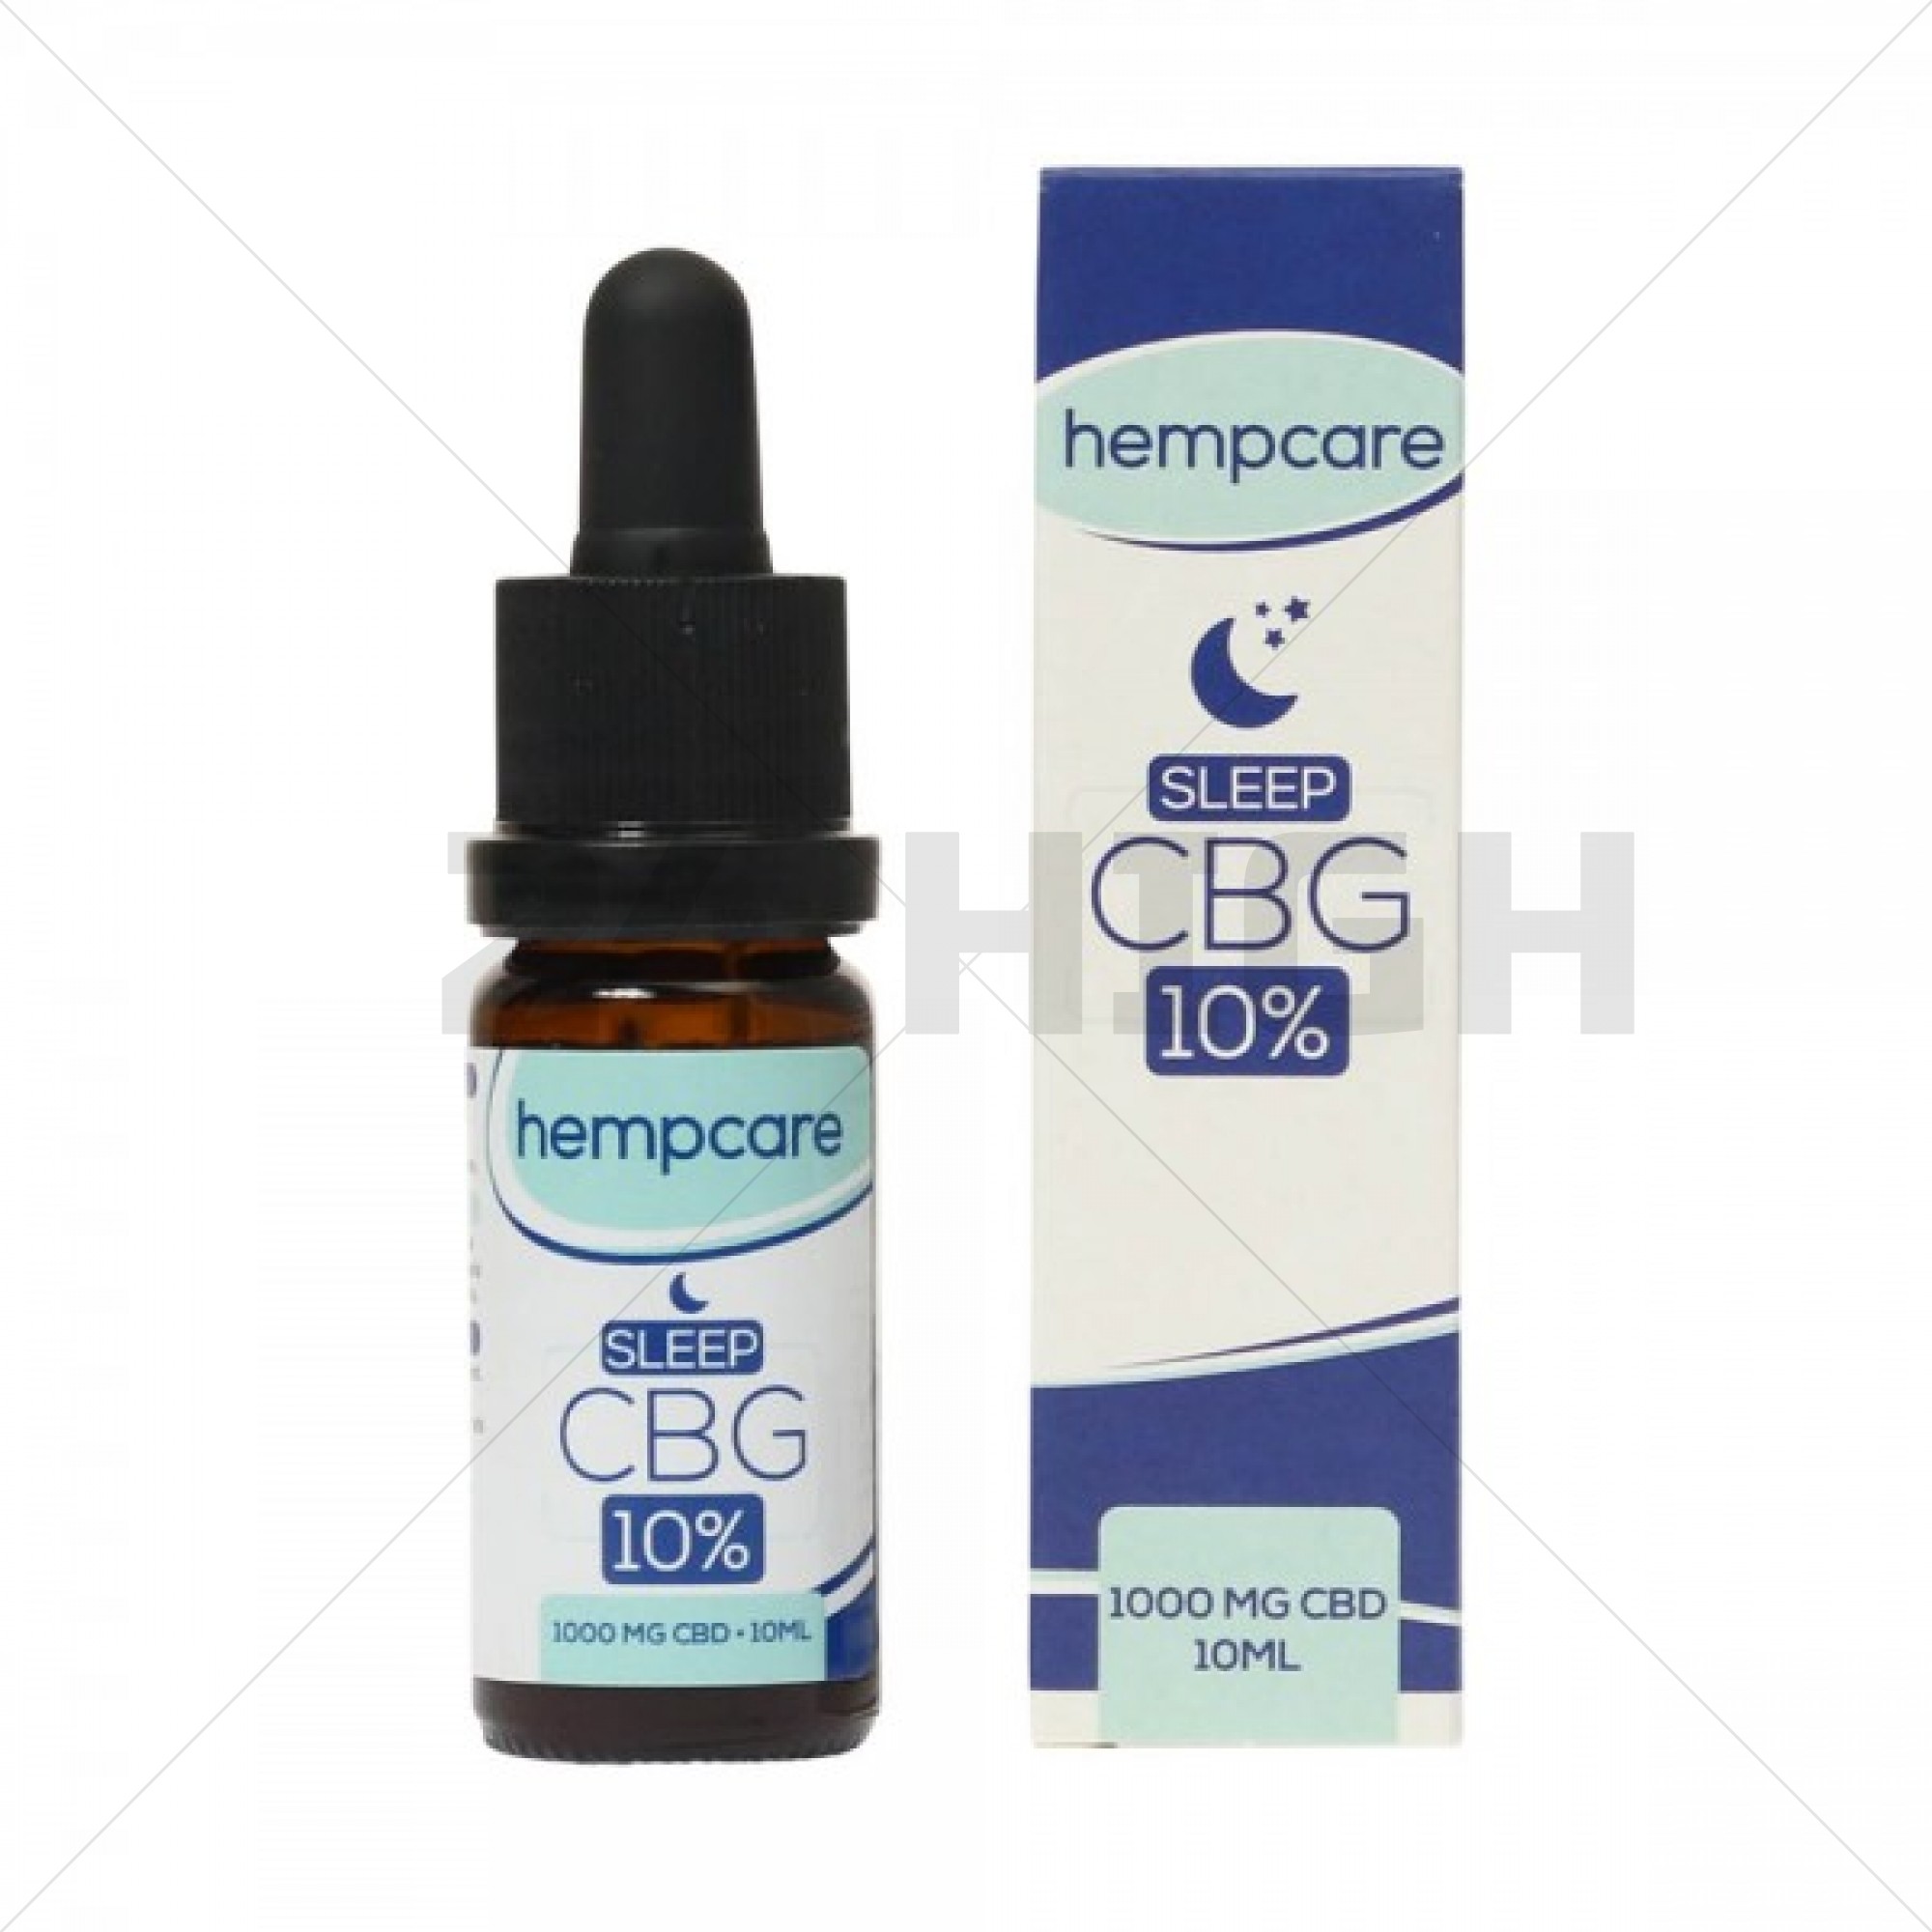 HempCare Sleep huile de CBG - 10% CBD (1000mg)